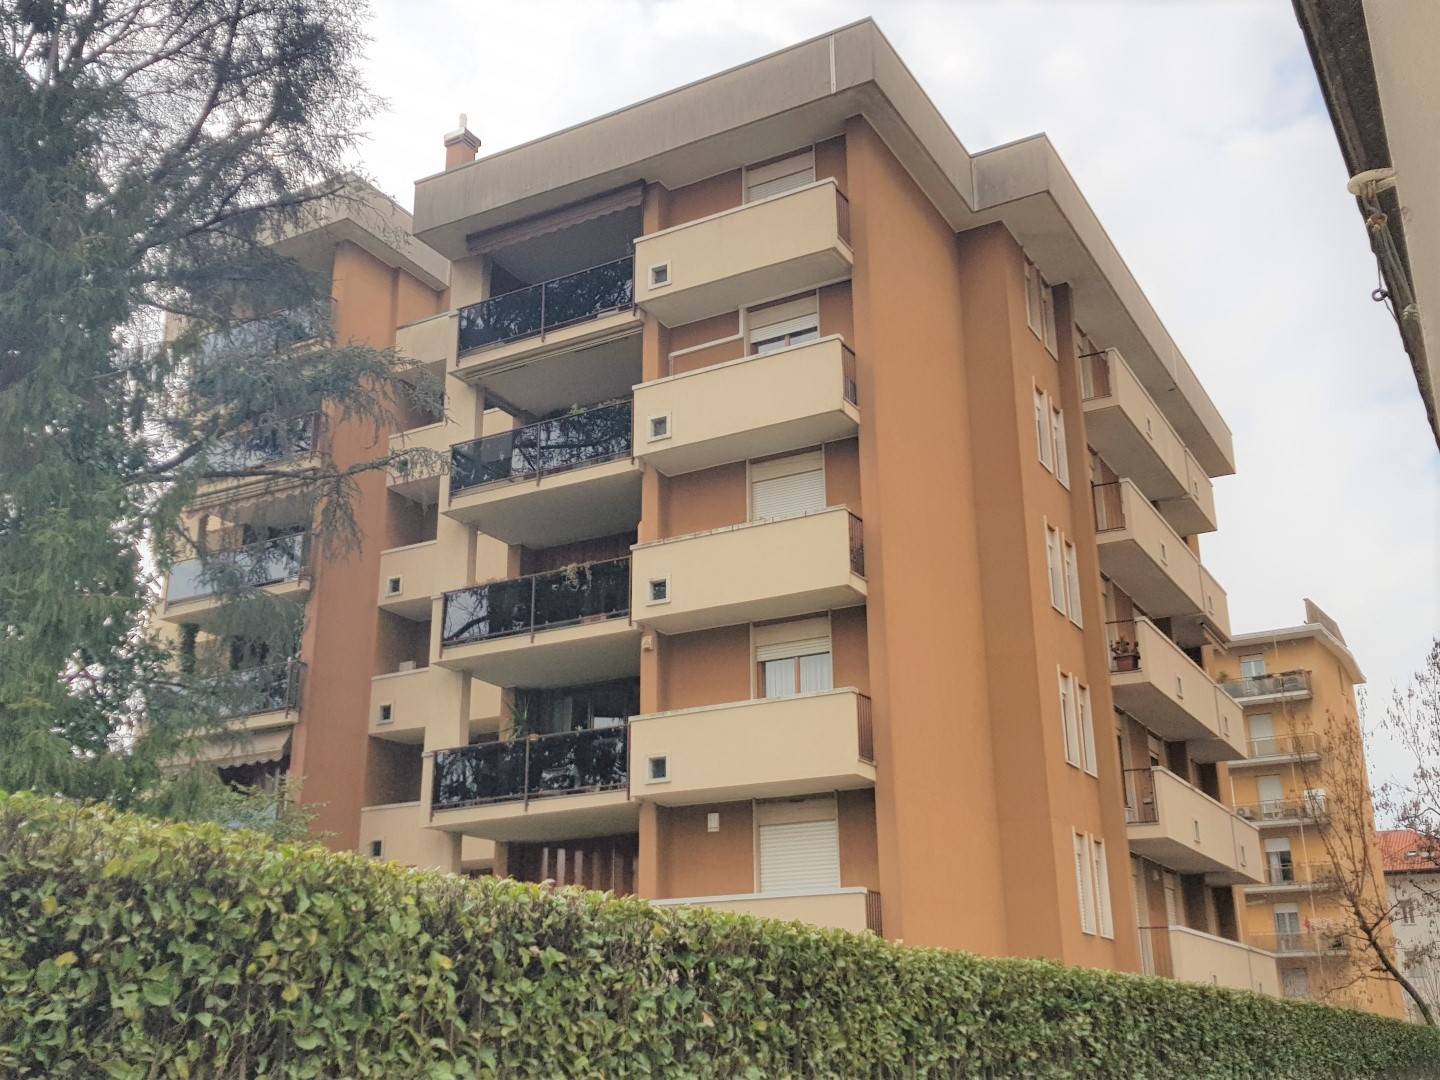 Appartamento in vendita a Busto Arsizio, 4 locali, zona dale, prezzo € 230.000 | PortaleAgenzieImmobiliari.it